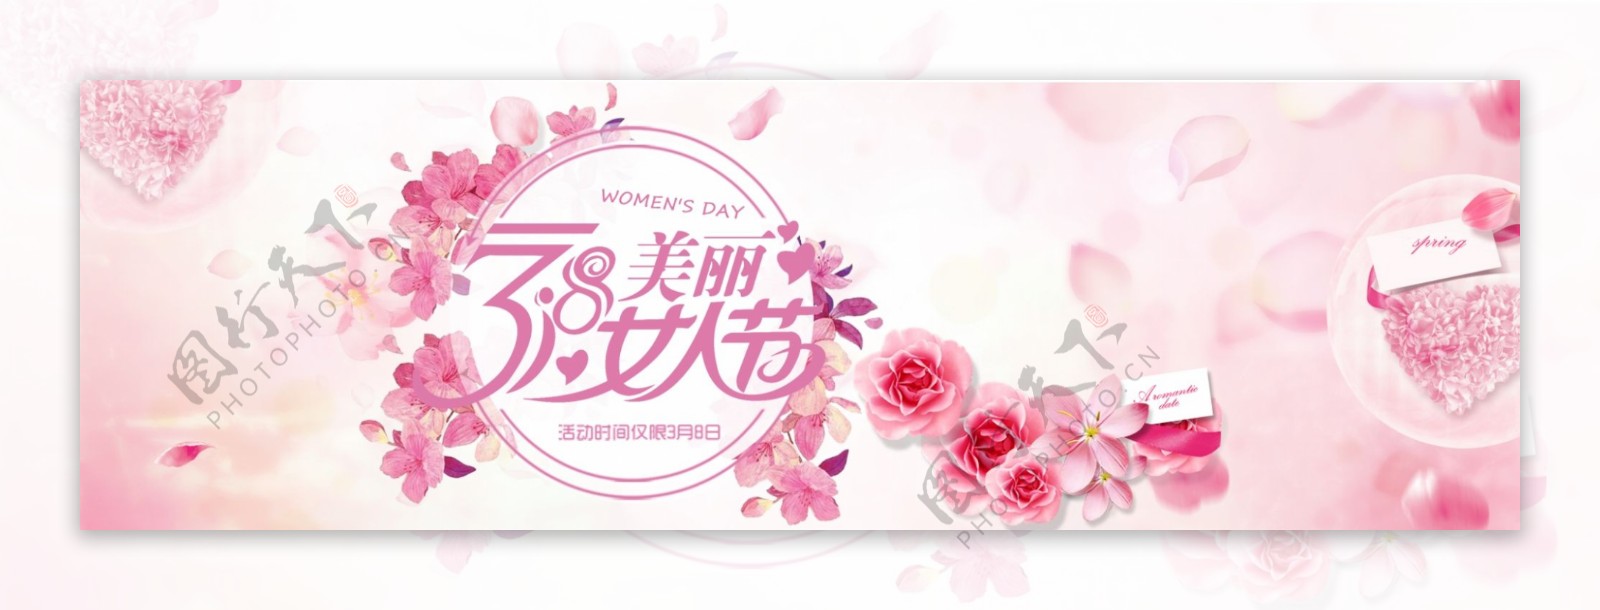 三八女人节海报设计粉色浪漫甜蜜